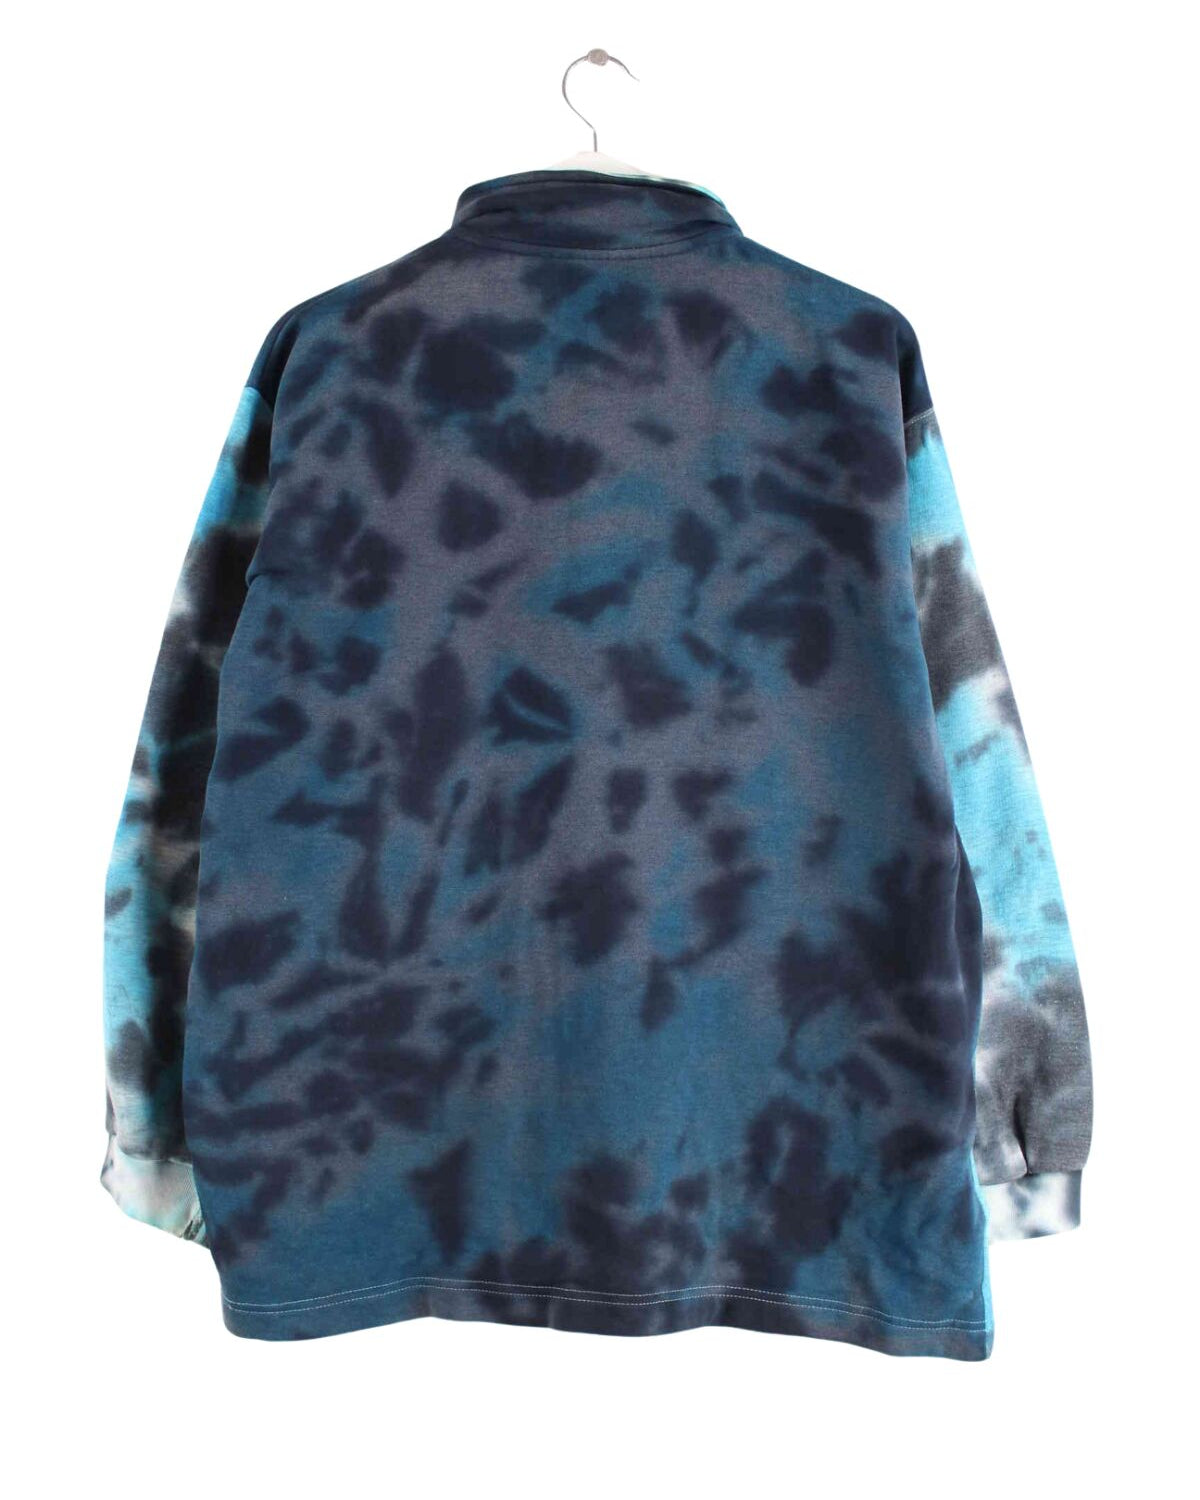 Reebok 90s Vintage Tie Dye Half Zip Sweater Blau M (back image)